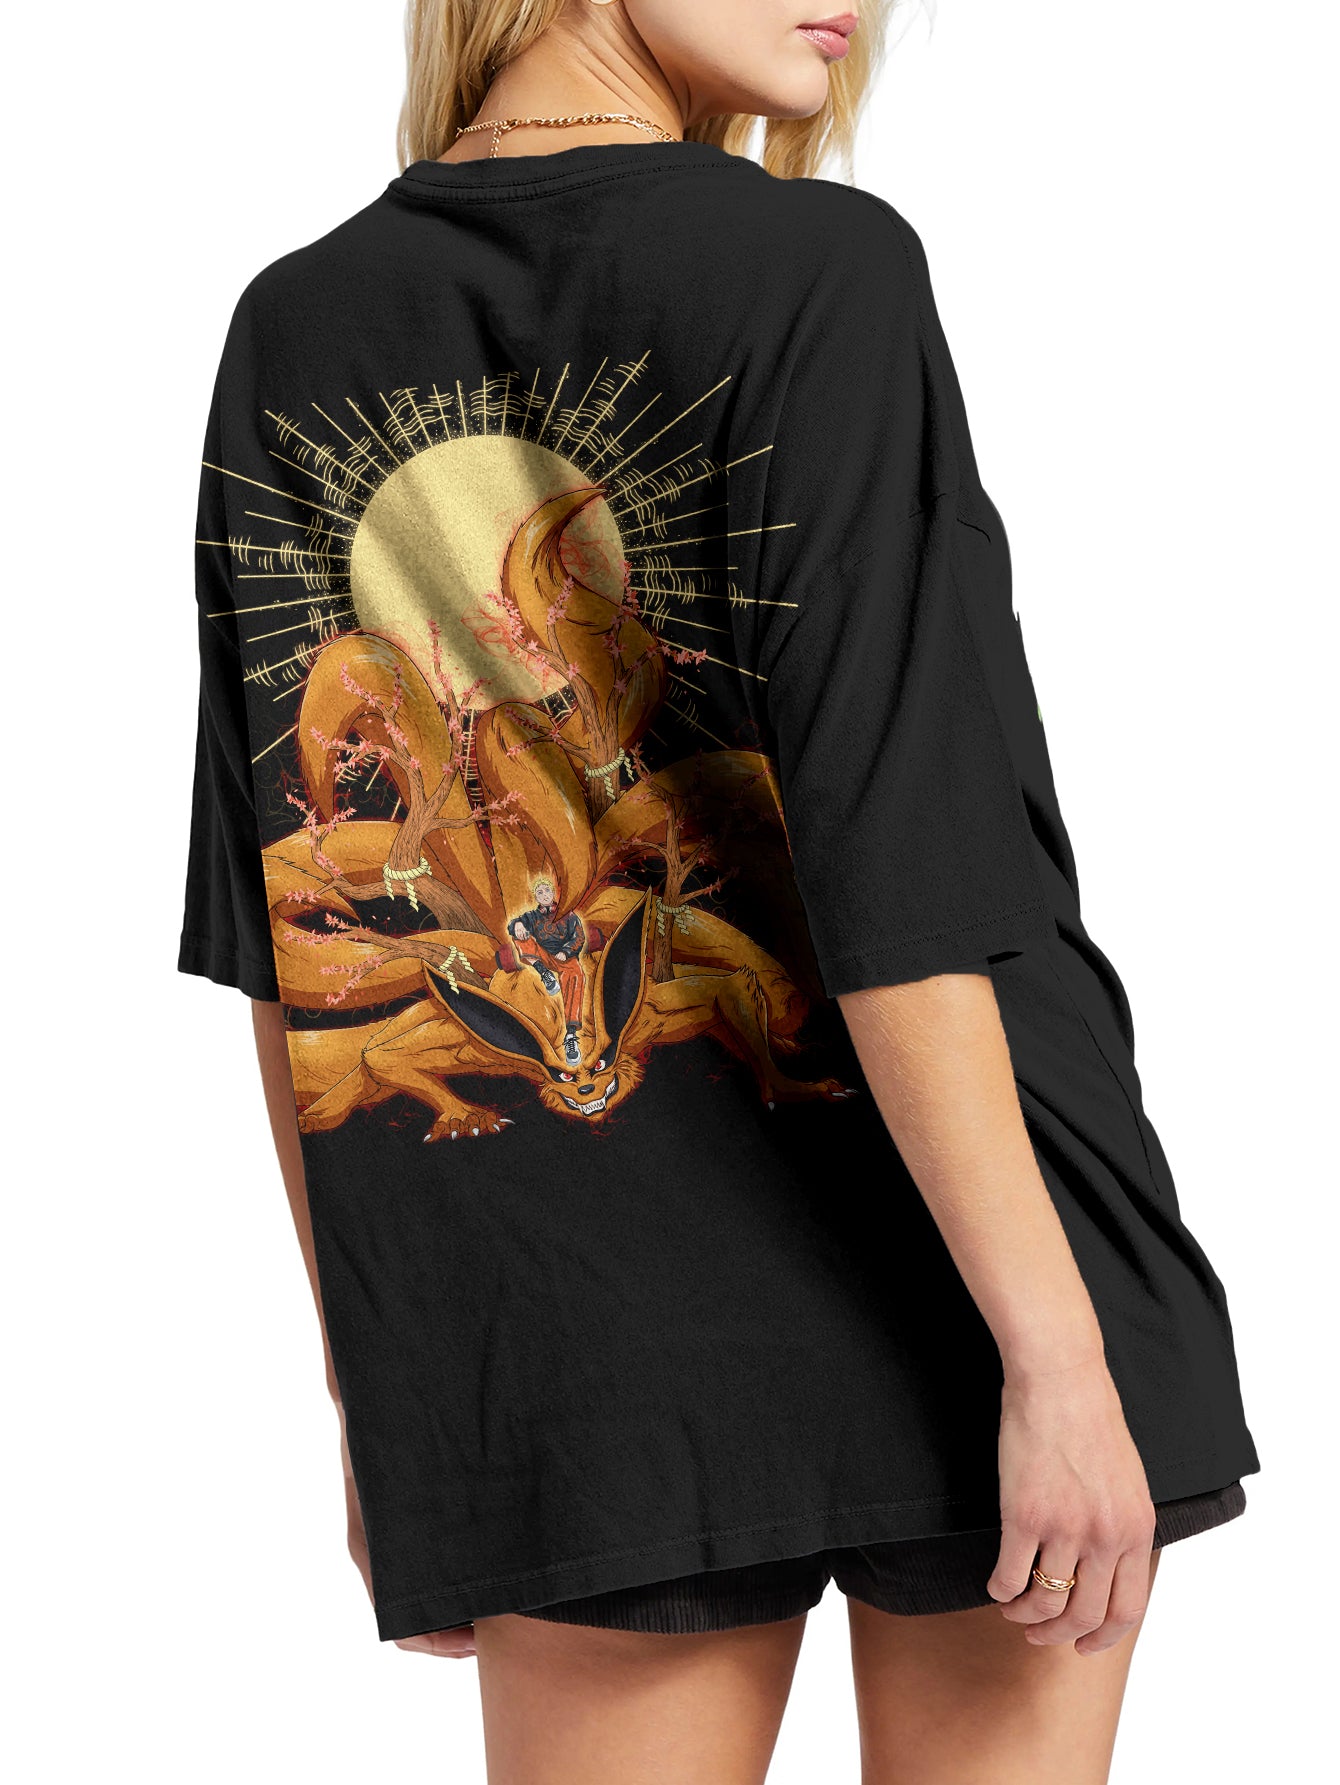 Naruto Stwear Urban Fashion Oversize T-Shirt